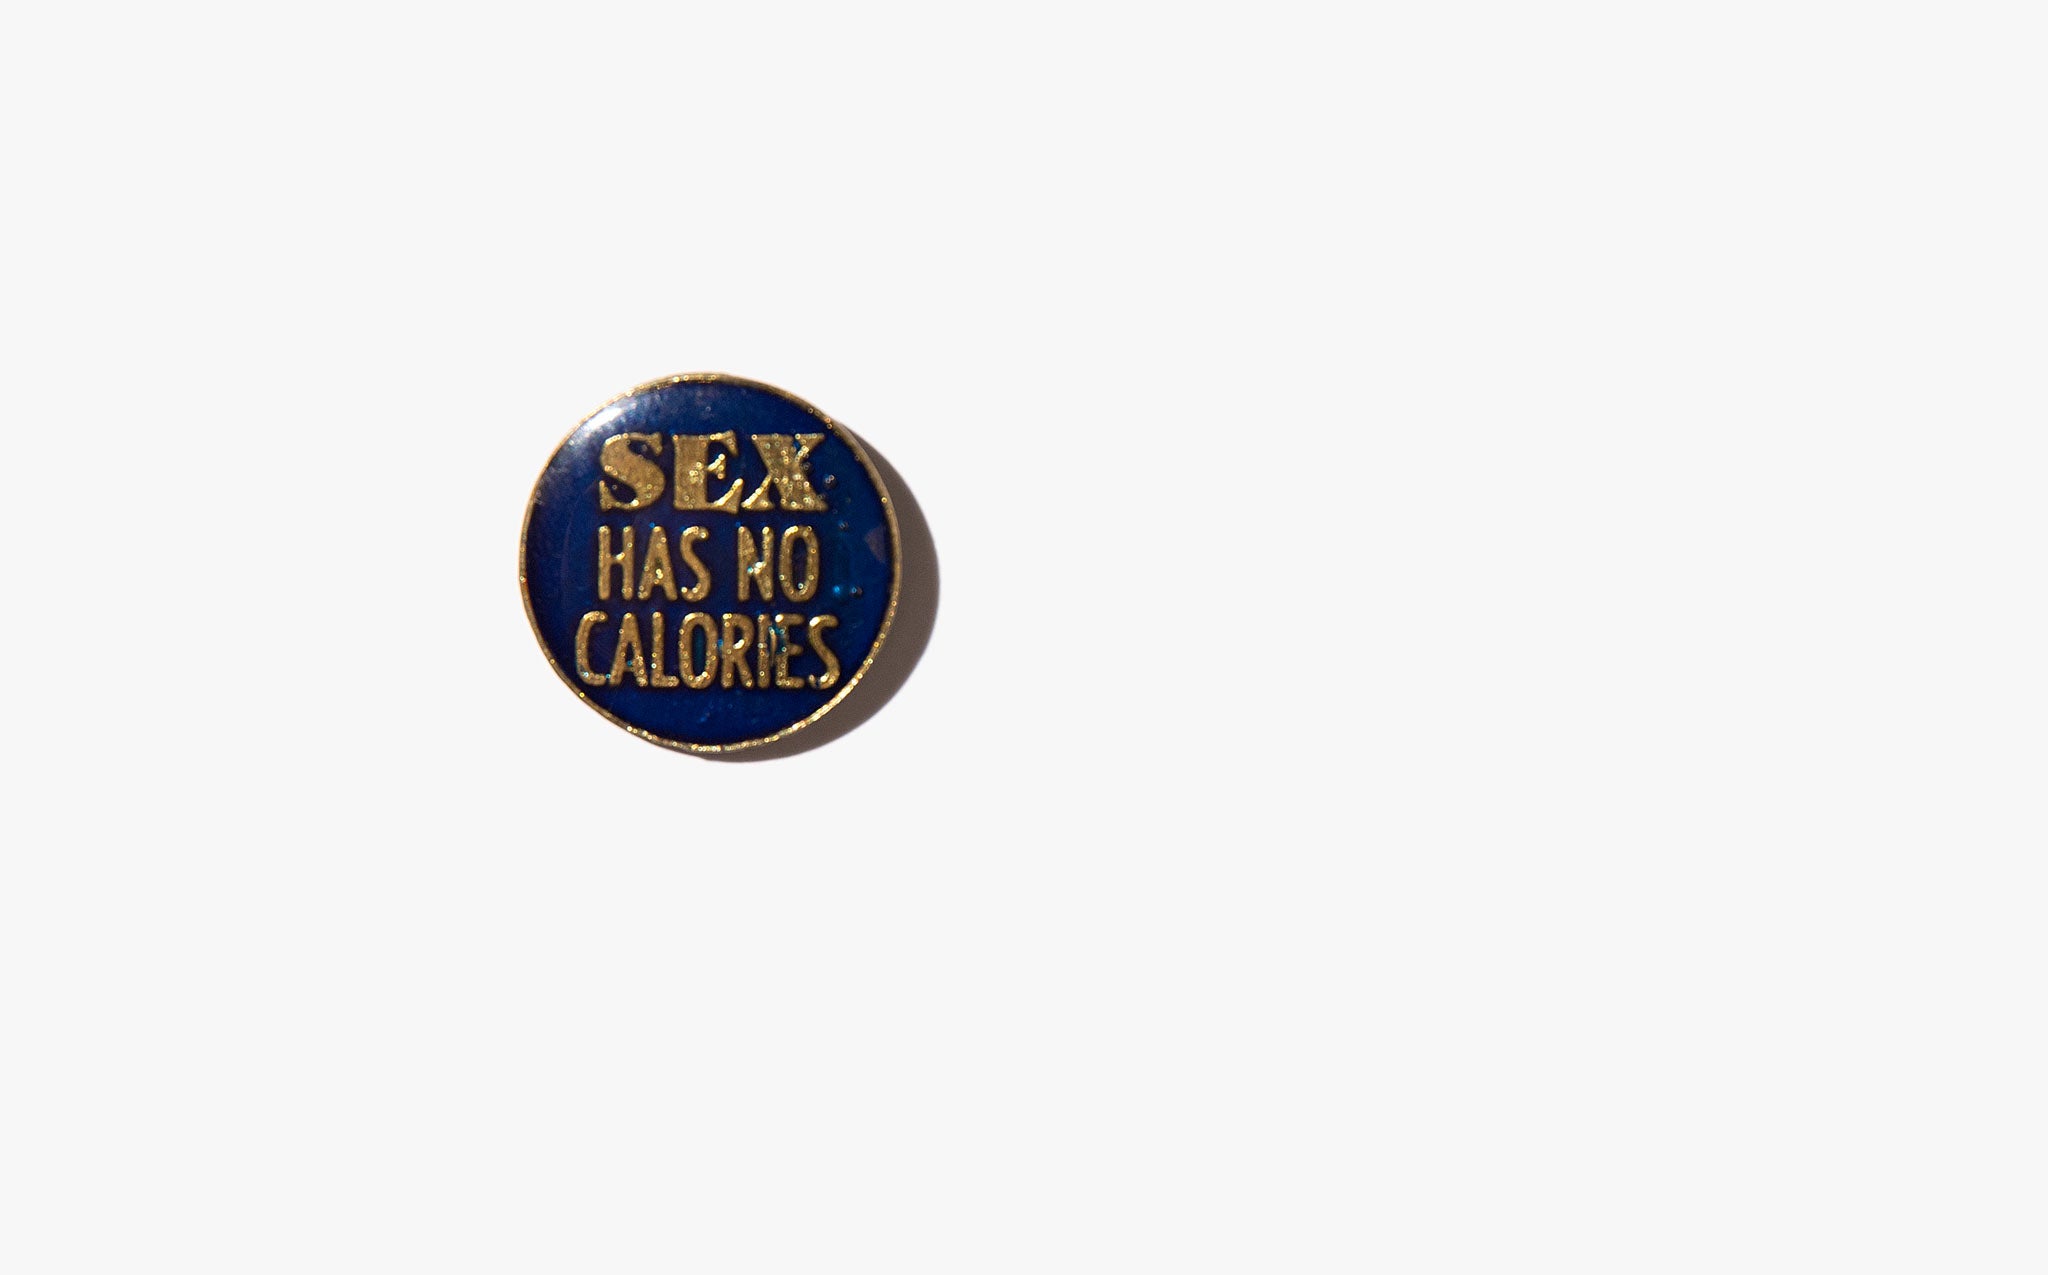 Sex Has No Calories Vintage Pin